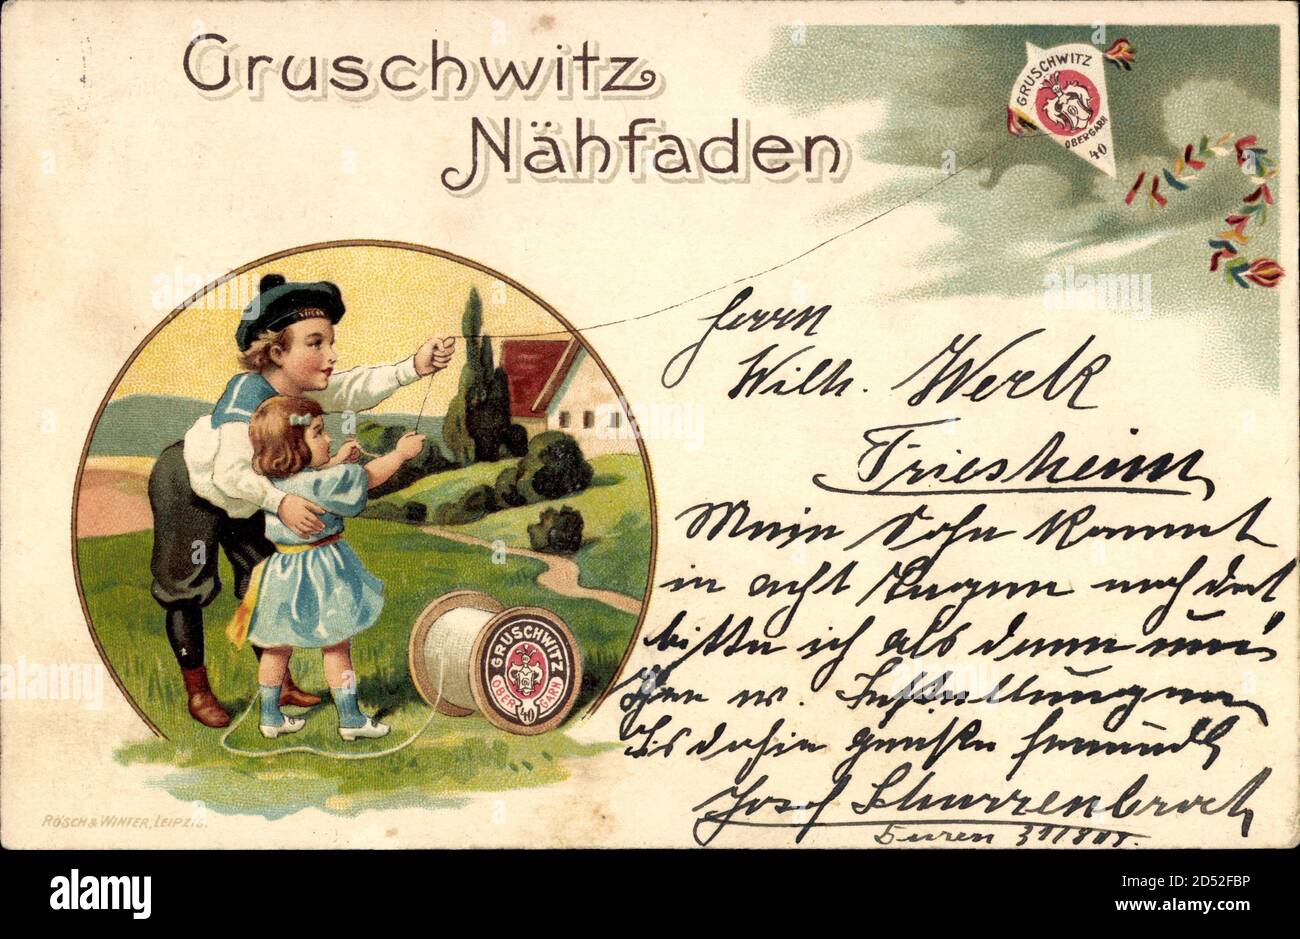 Gruschwitz Nähfaden, Flugdrachen, Kinder, reklame | utilizzo in tutto il mondo Foto Stock